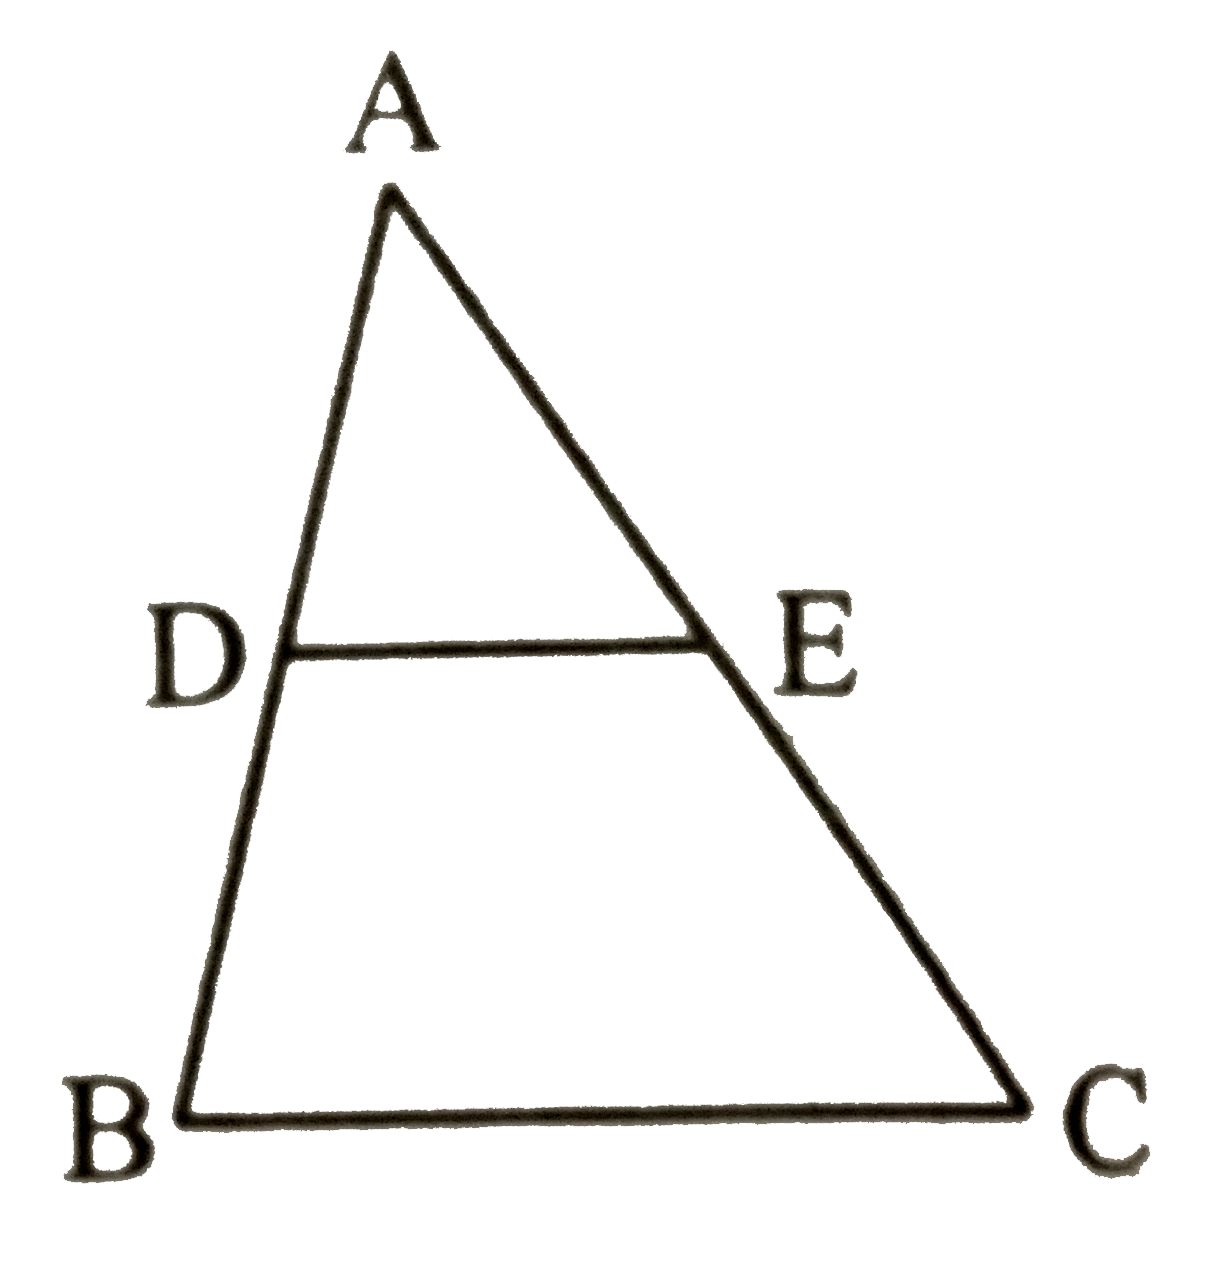 दी गई आकृति में DE||BC यदि AD = 1.7 सेमी, AB = 6.8  सेमी तथा AC = 9 सेमी है तो AE  का मान ज्ञात कीजिए |